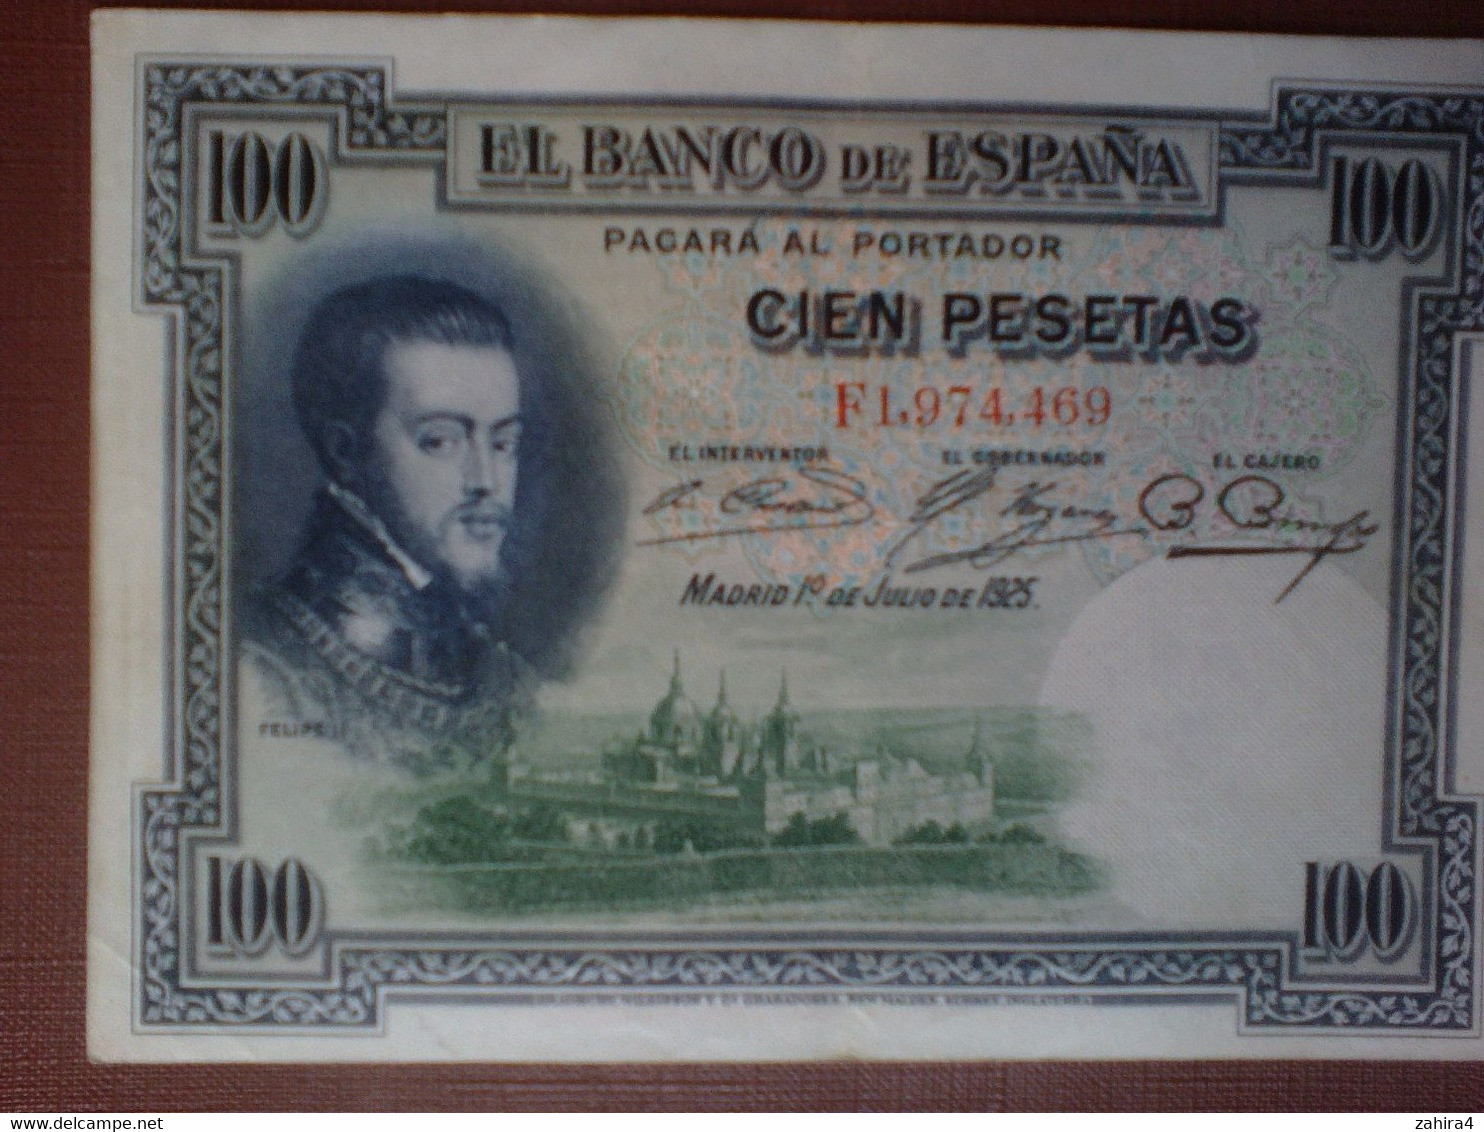 100 Pesetas - El Banco De Espana - F1,974,469 - Madrid 1° De Julio De 1925 - Felipe II - Cien Pesetas - 100 Peseten